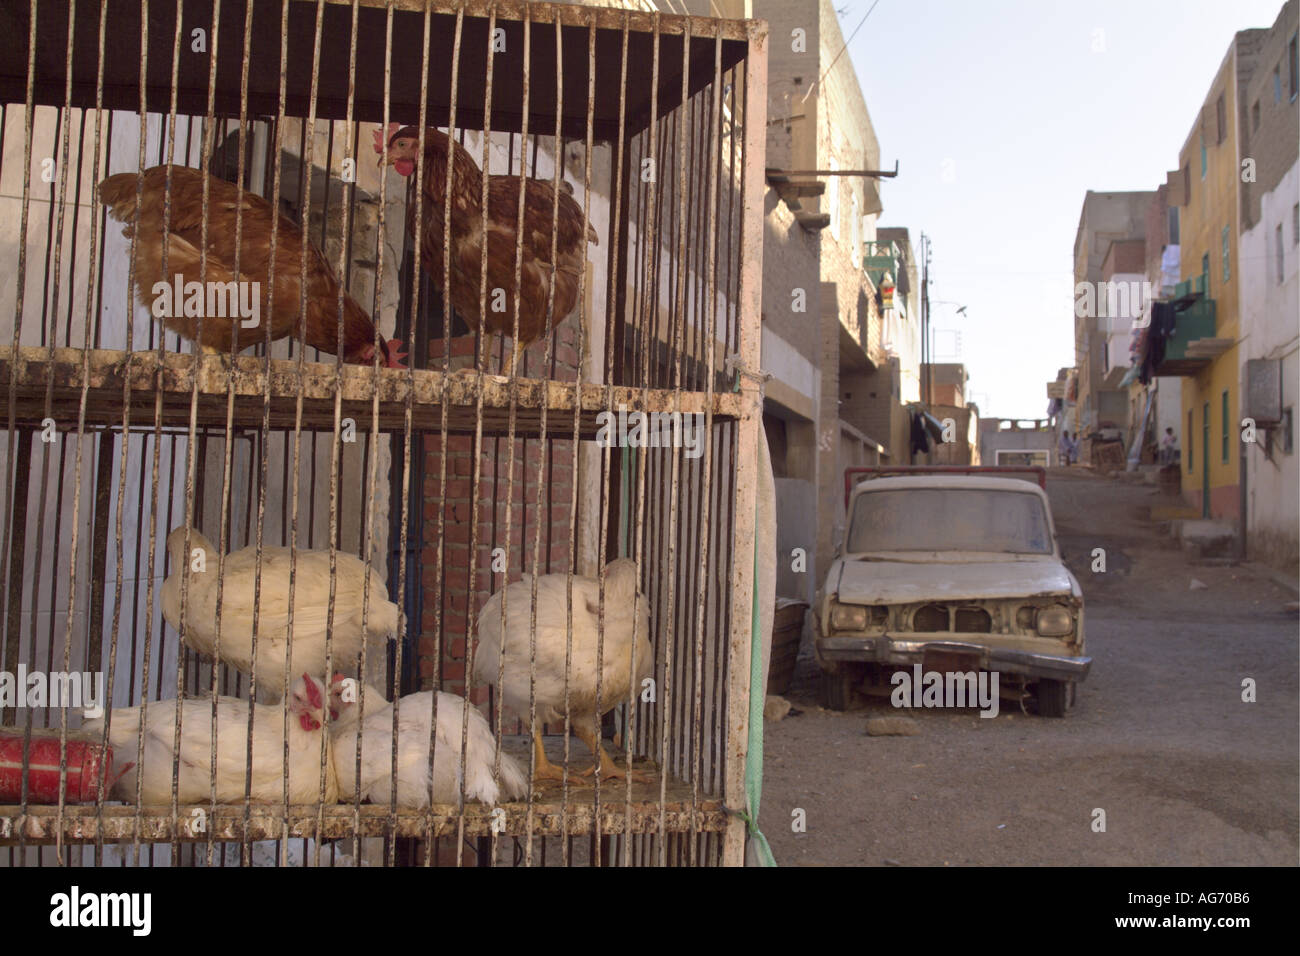 Vieille voiture abandonnée et en cage poules dans la rue, Al-Qusair, Égypte. Banque D'Images